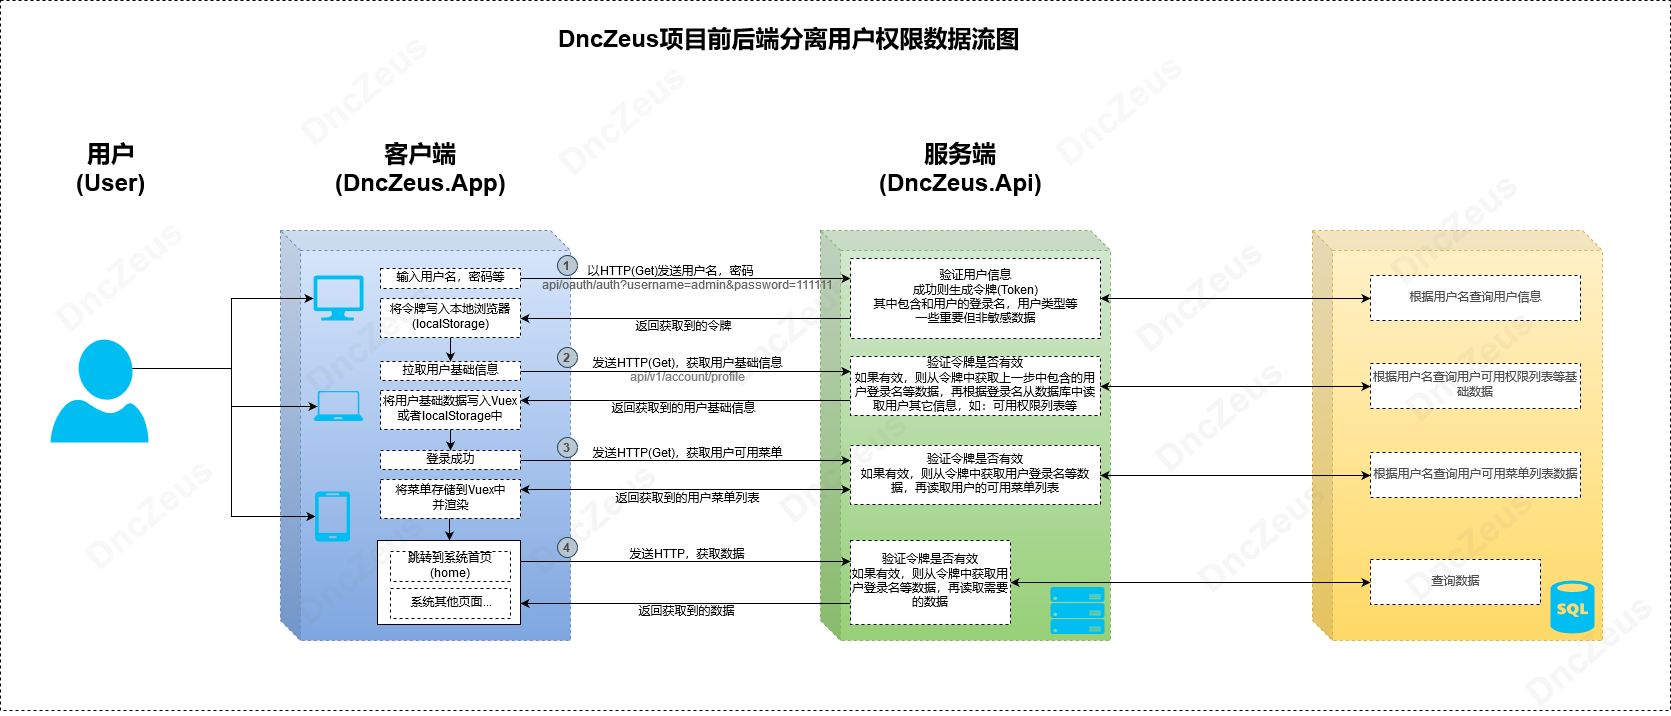 DncZeus项目前后端分离用户权限数据流的图